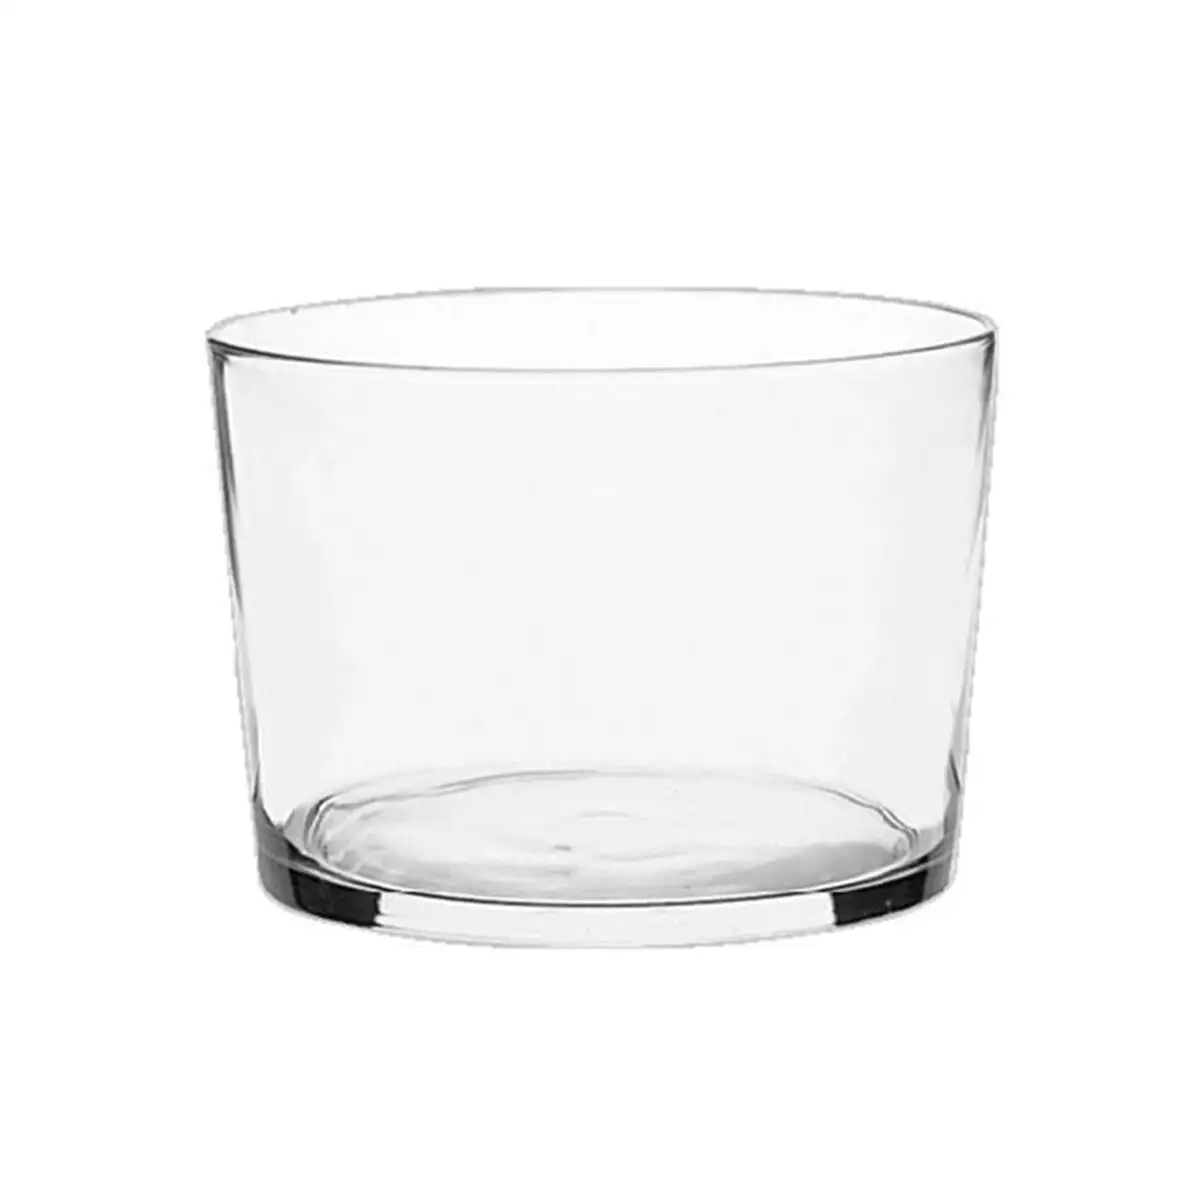 Set de verres secret de gourmet bodega verre transparent 240 ml 6 pieces_1055. Bienvenue chez DIAYTAR SENEGAL - Où Chaque Objet a sa Propre Histoire. Découvrez notre sélection soigneusement choisie et choisissez des produits qui racontent le patrimoine sénégalais.